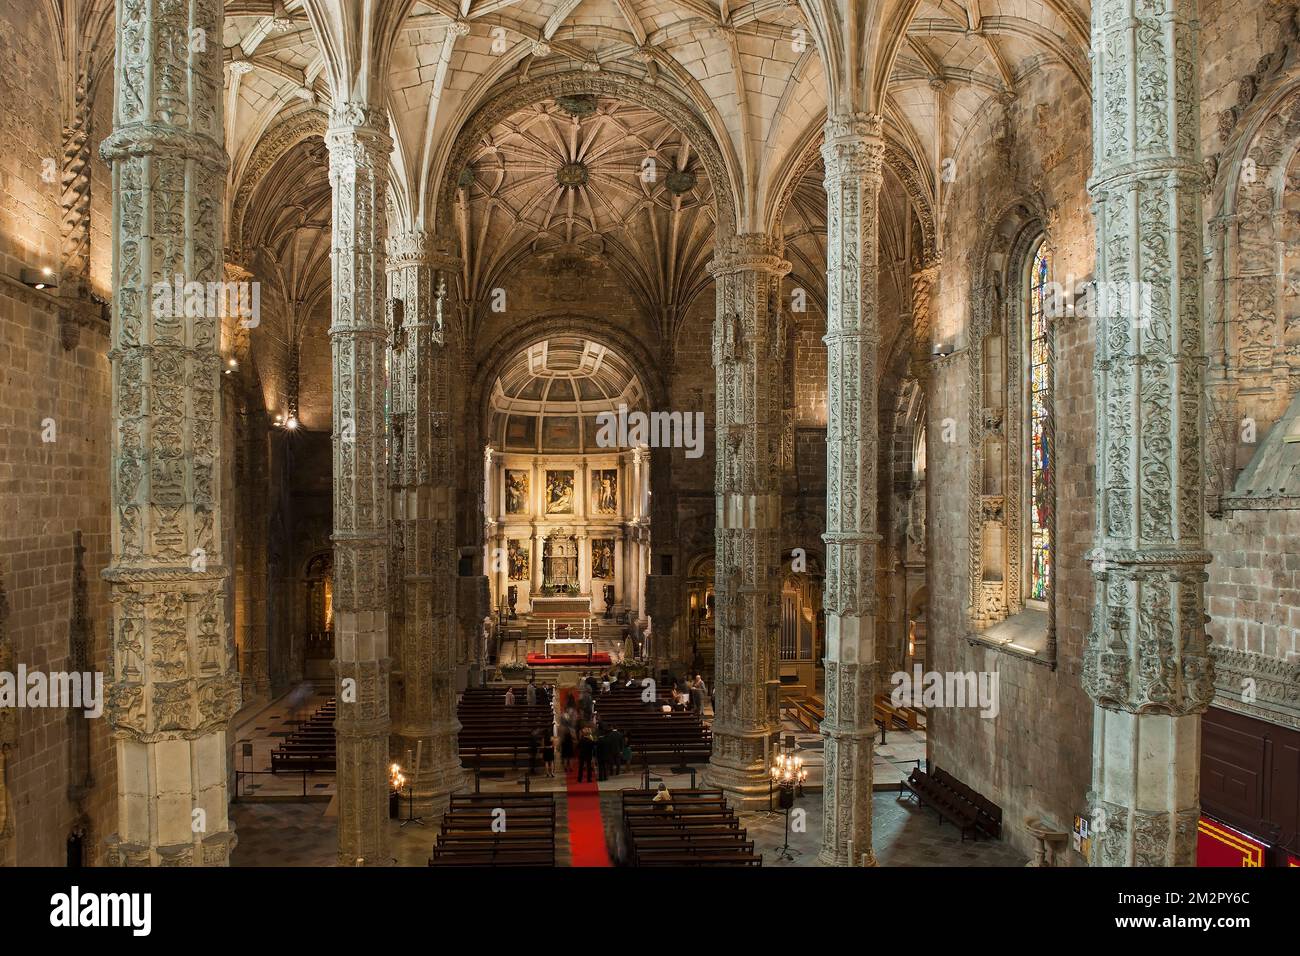 Iglesia de Santa María, Mosteiro dos Jéronimos (Monasterio de los Hieronymites), distrito de Belem, Lisboa, Portugal, Patrimonio de la Humanidad por la UNESCO Santa María Foto de stock